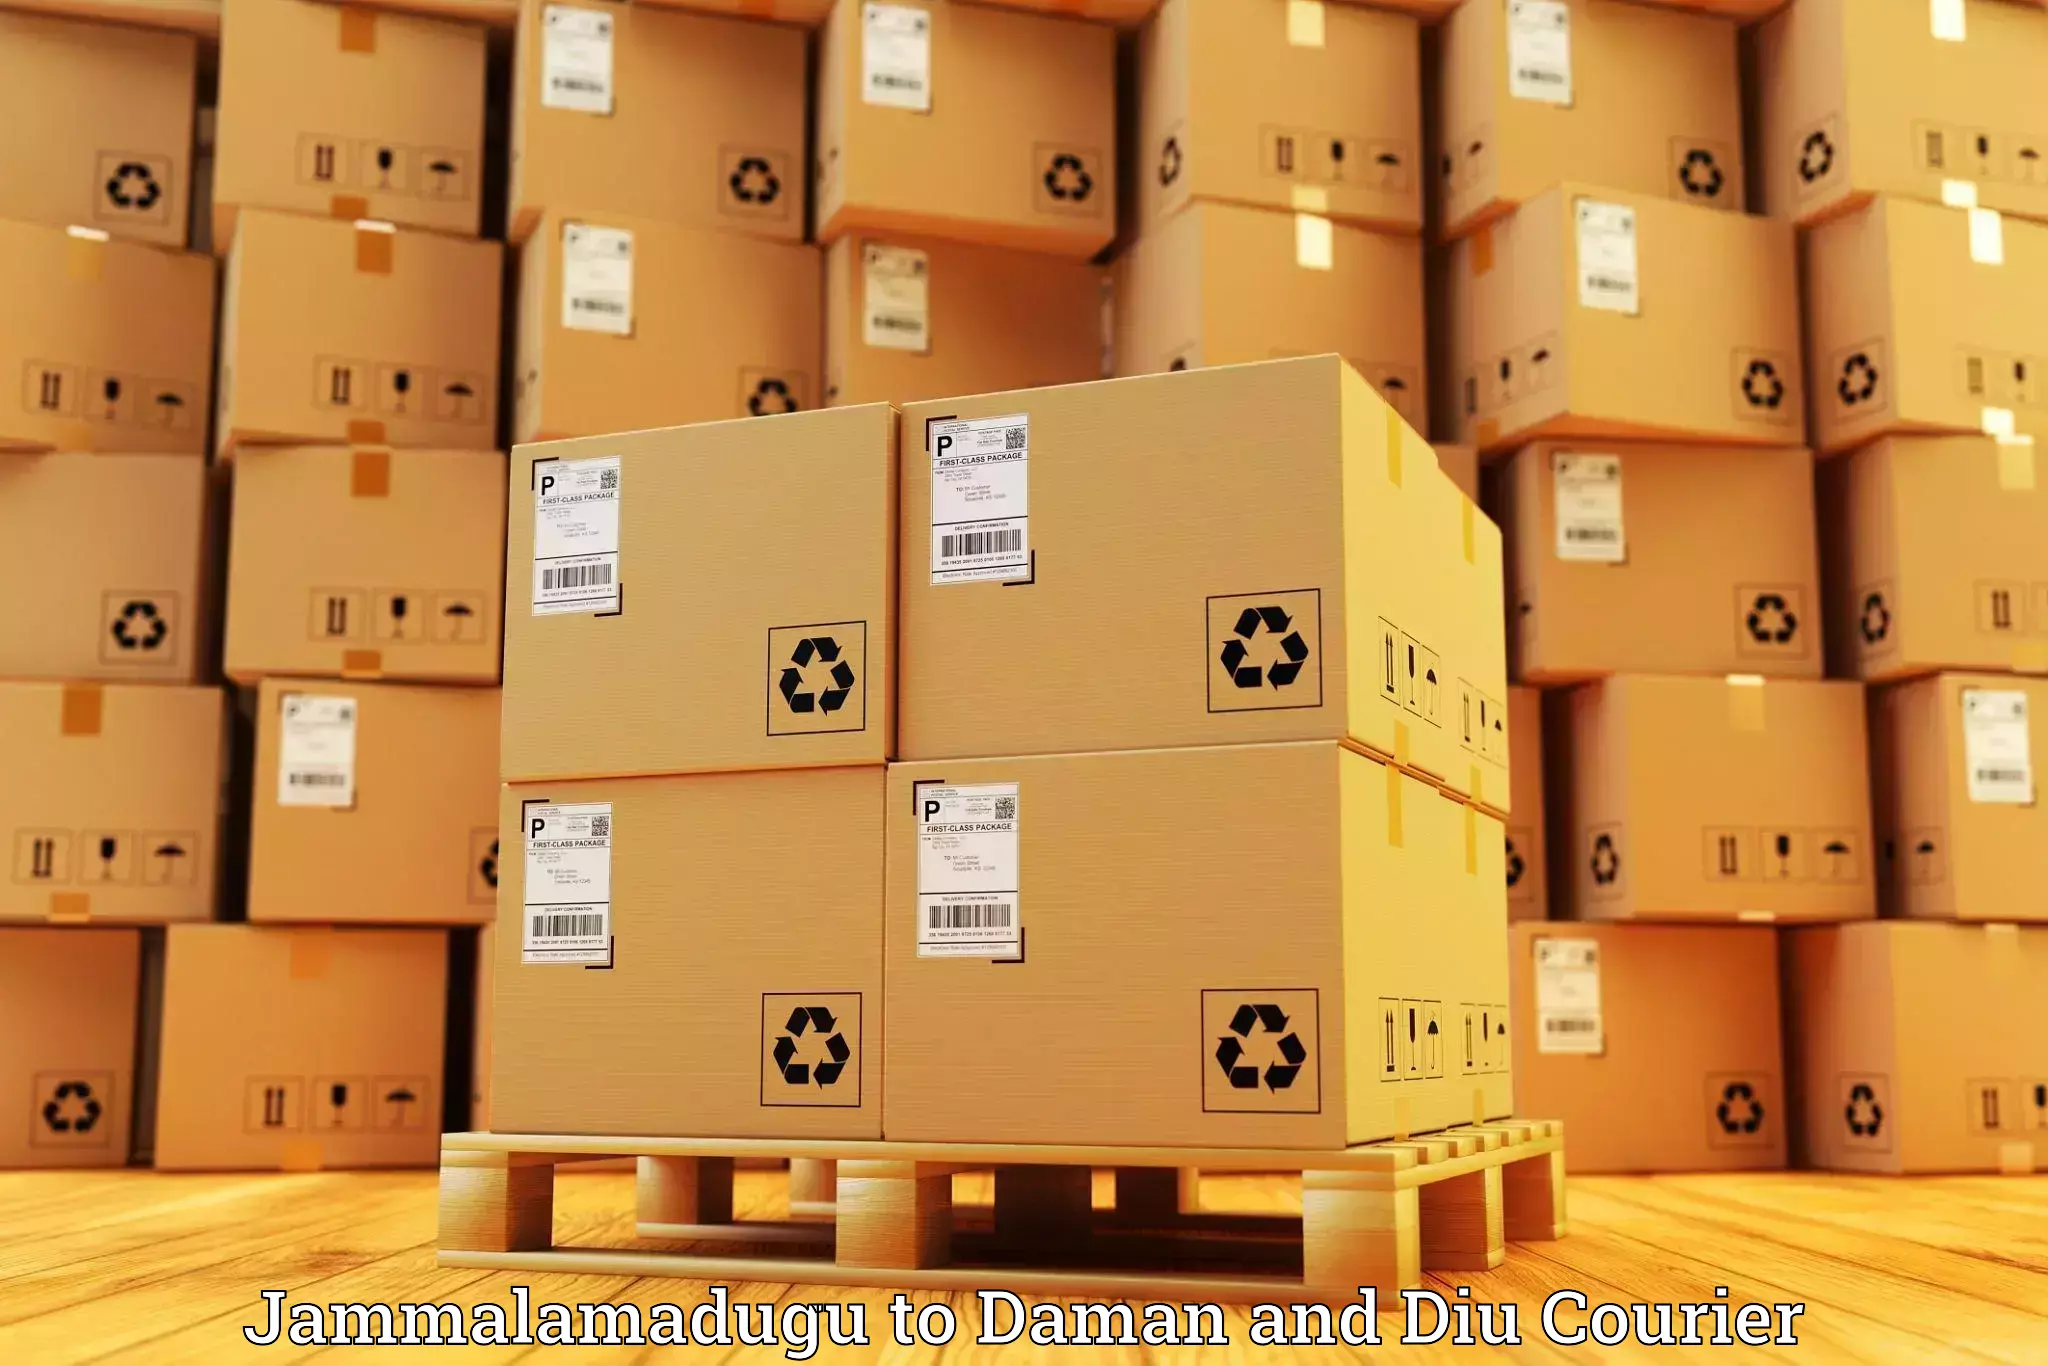 High-capacity parcel service Jammalamadugu to Daman